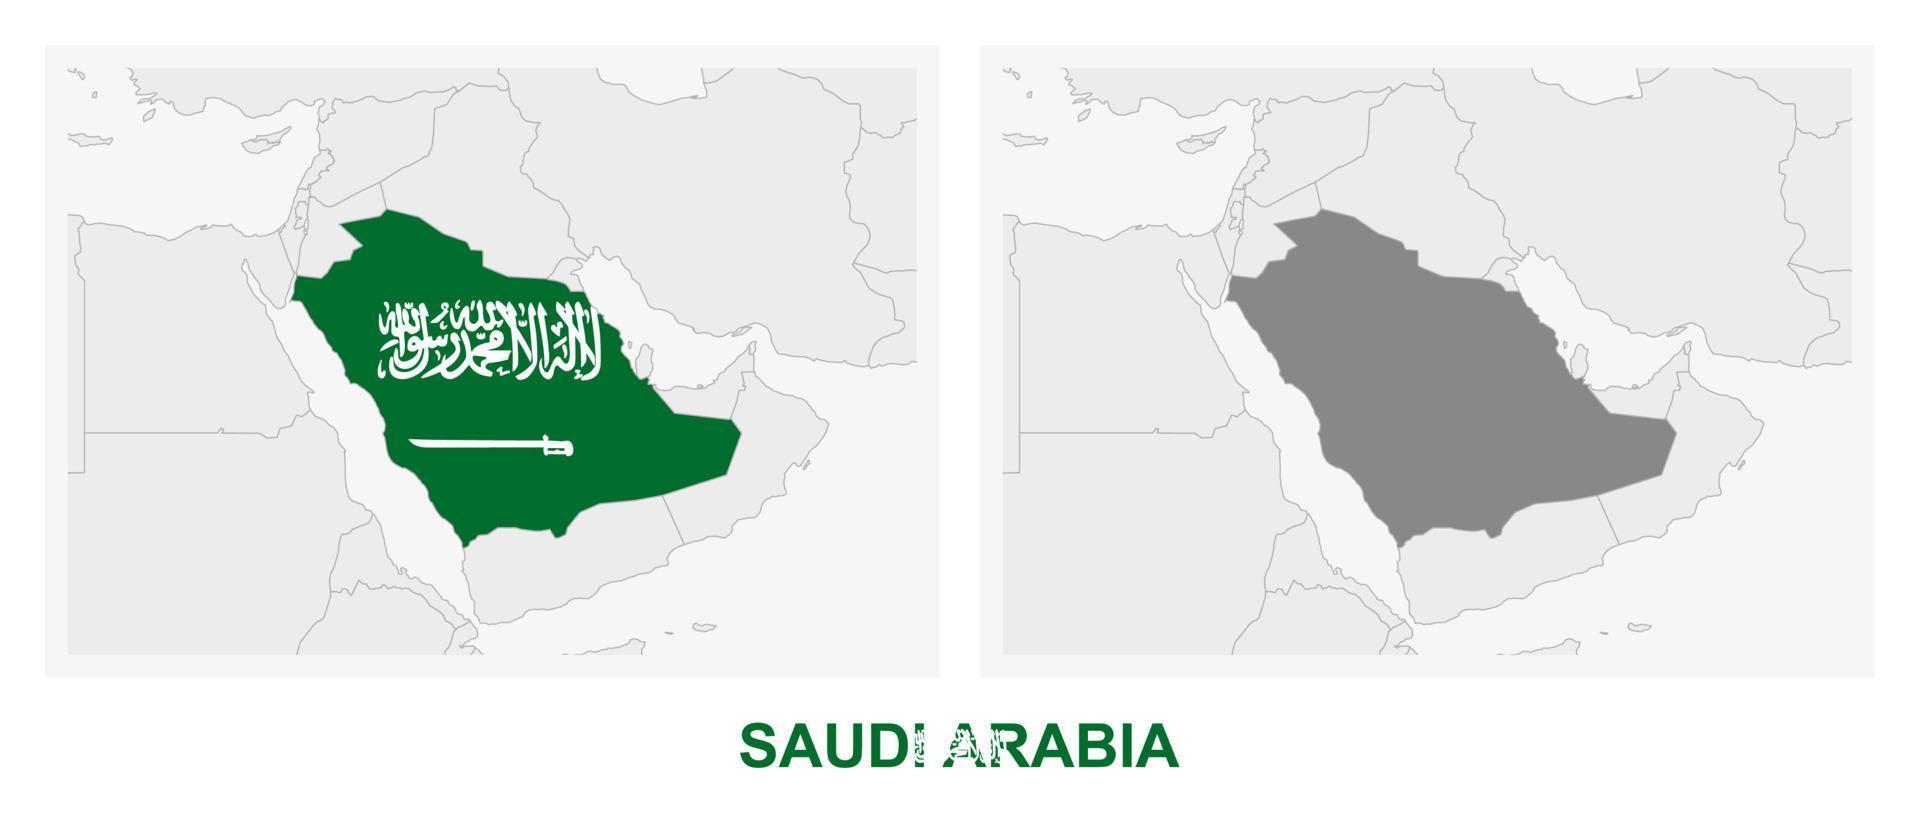 dos versiones del mapa de arabia saudita, con la bandera de arabia saudita y resaltada en gris oscuro. vector